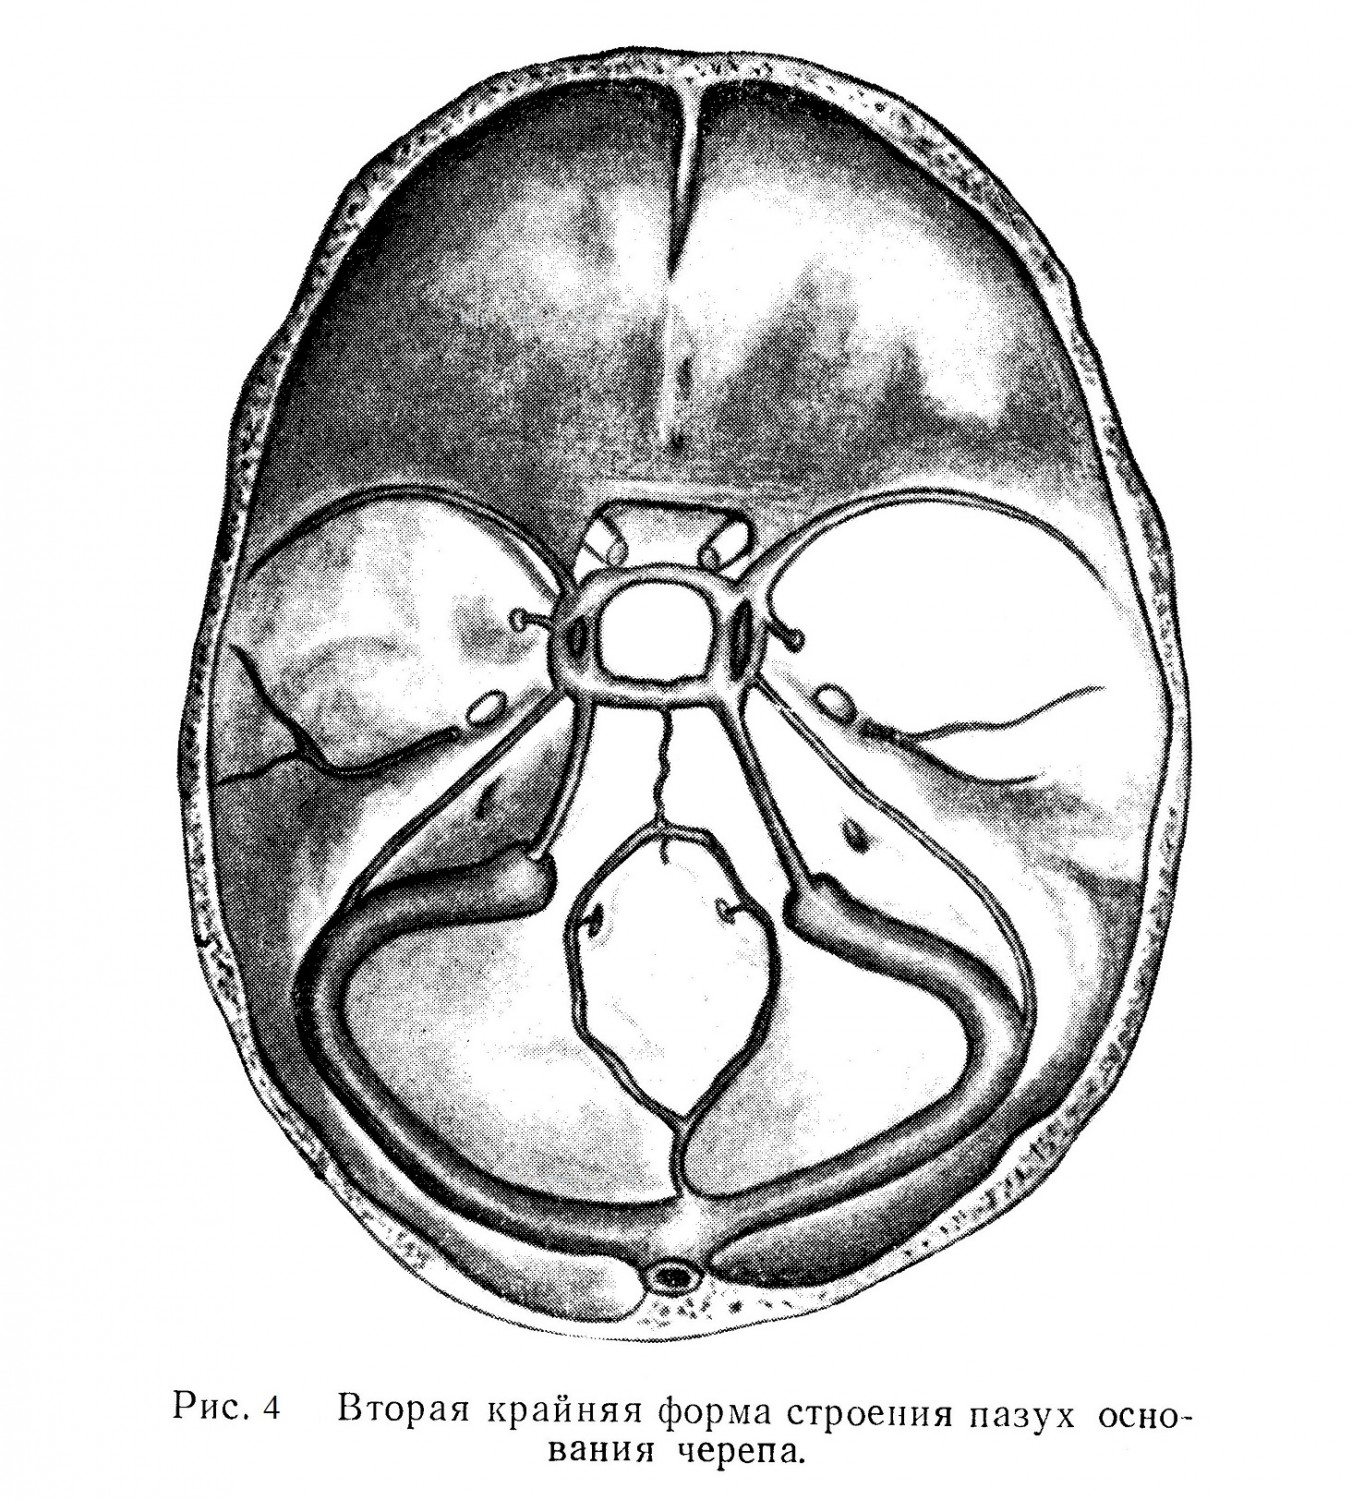 Вторая крайняя форма строения пазух основания черепа.